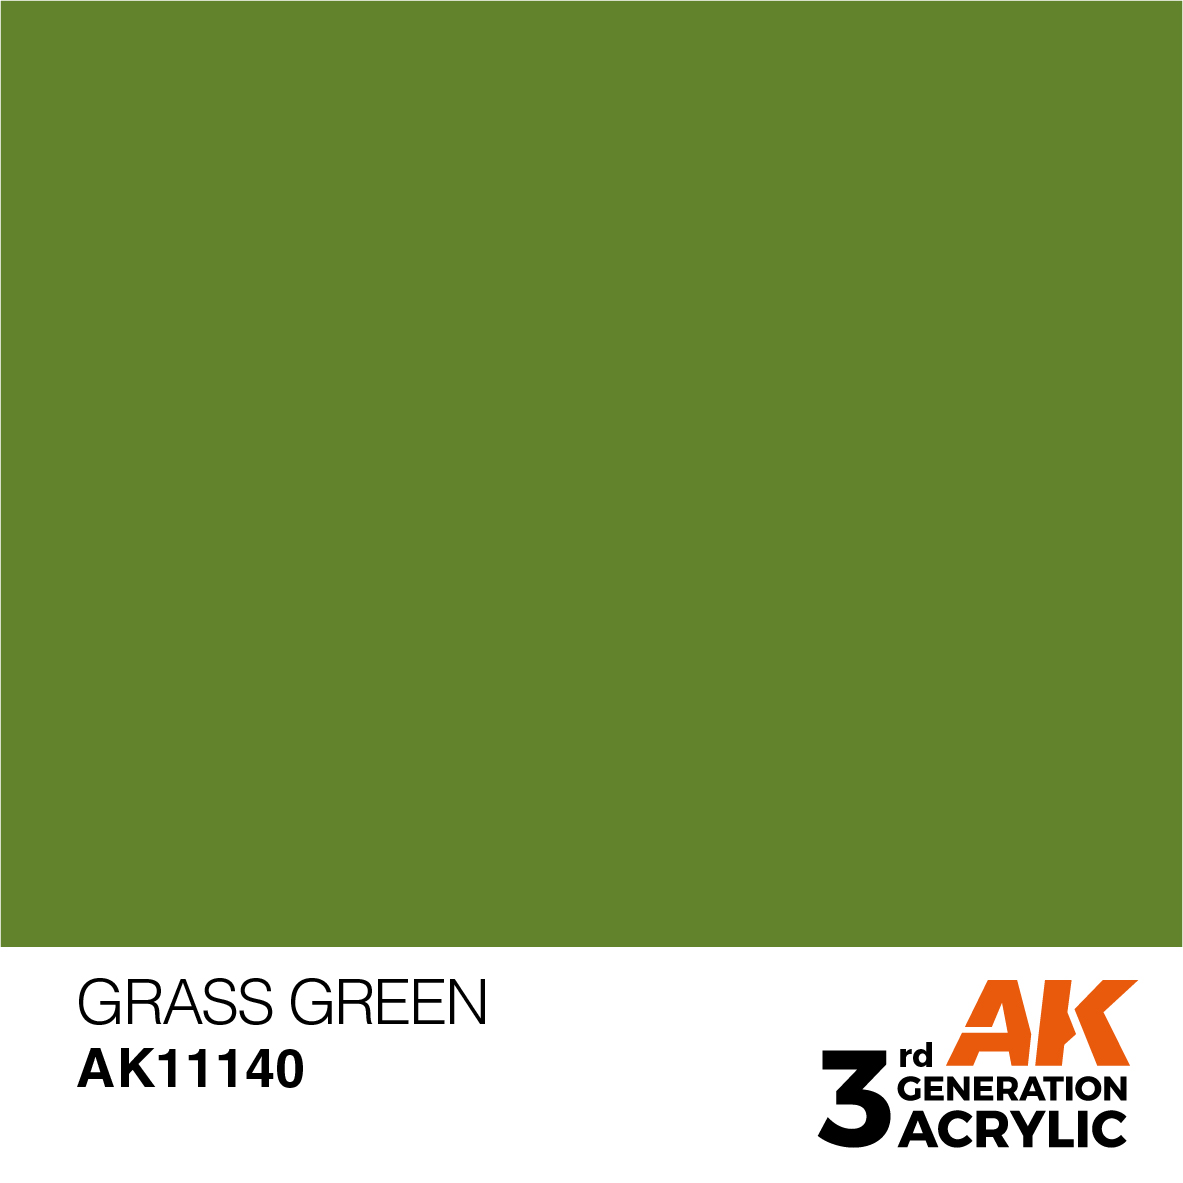 Grass Green - Standard